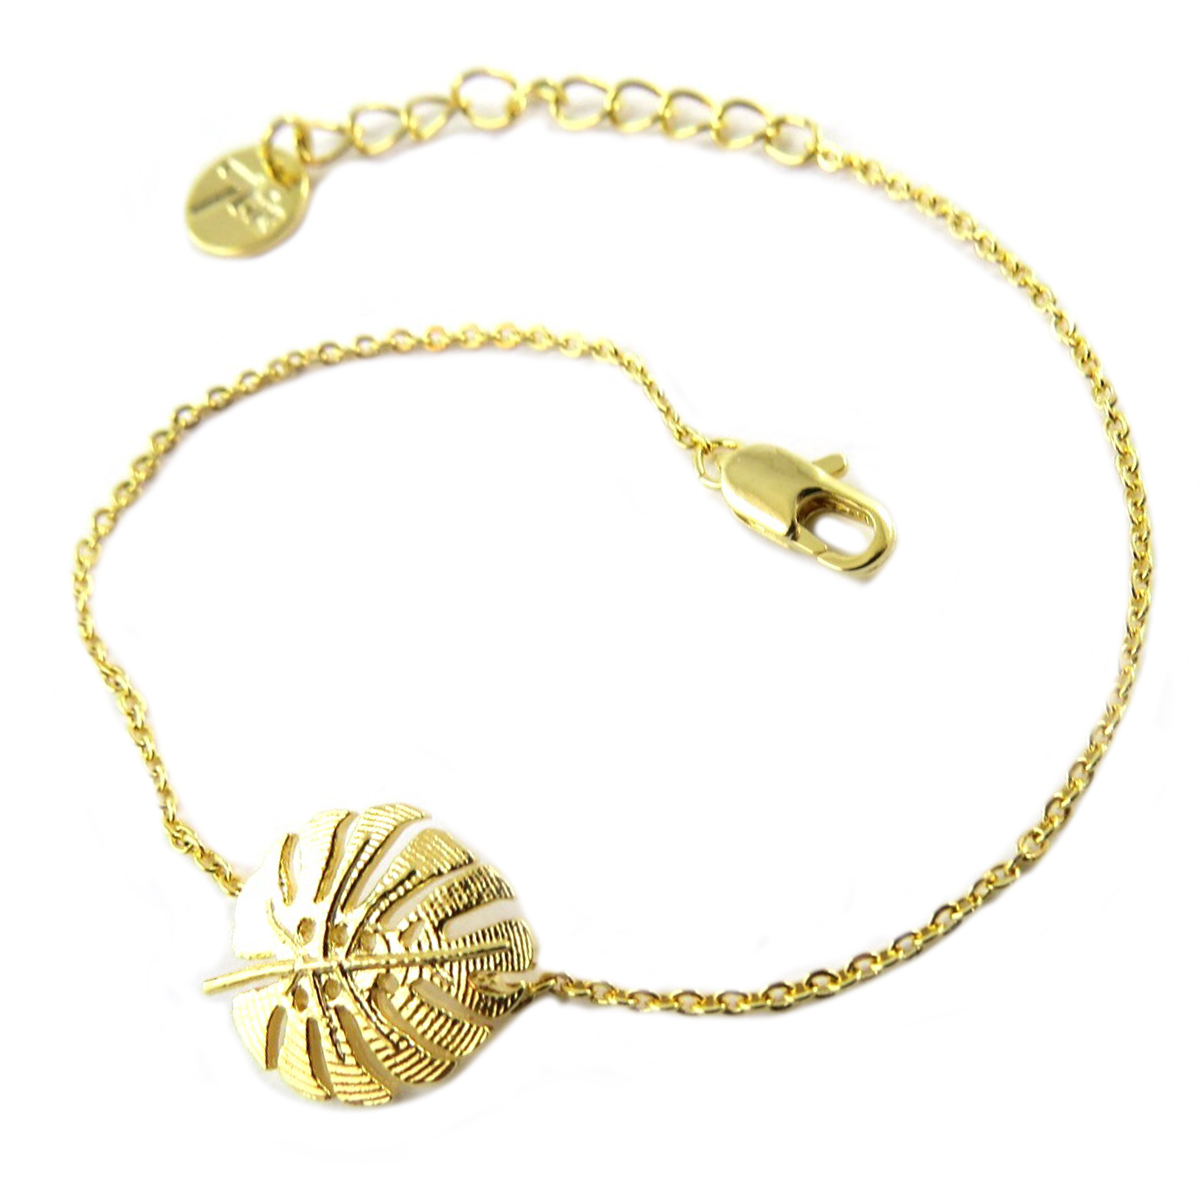 Bracelet artisanal \'Jungle\' doré (feuille de monstera) - 13x11 mm - [Q1329]